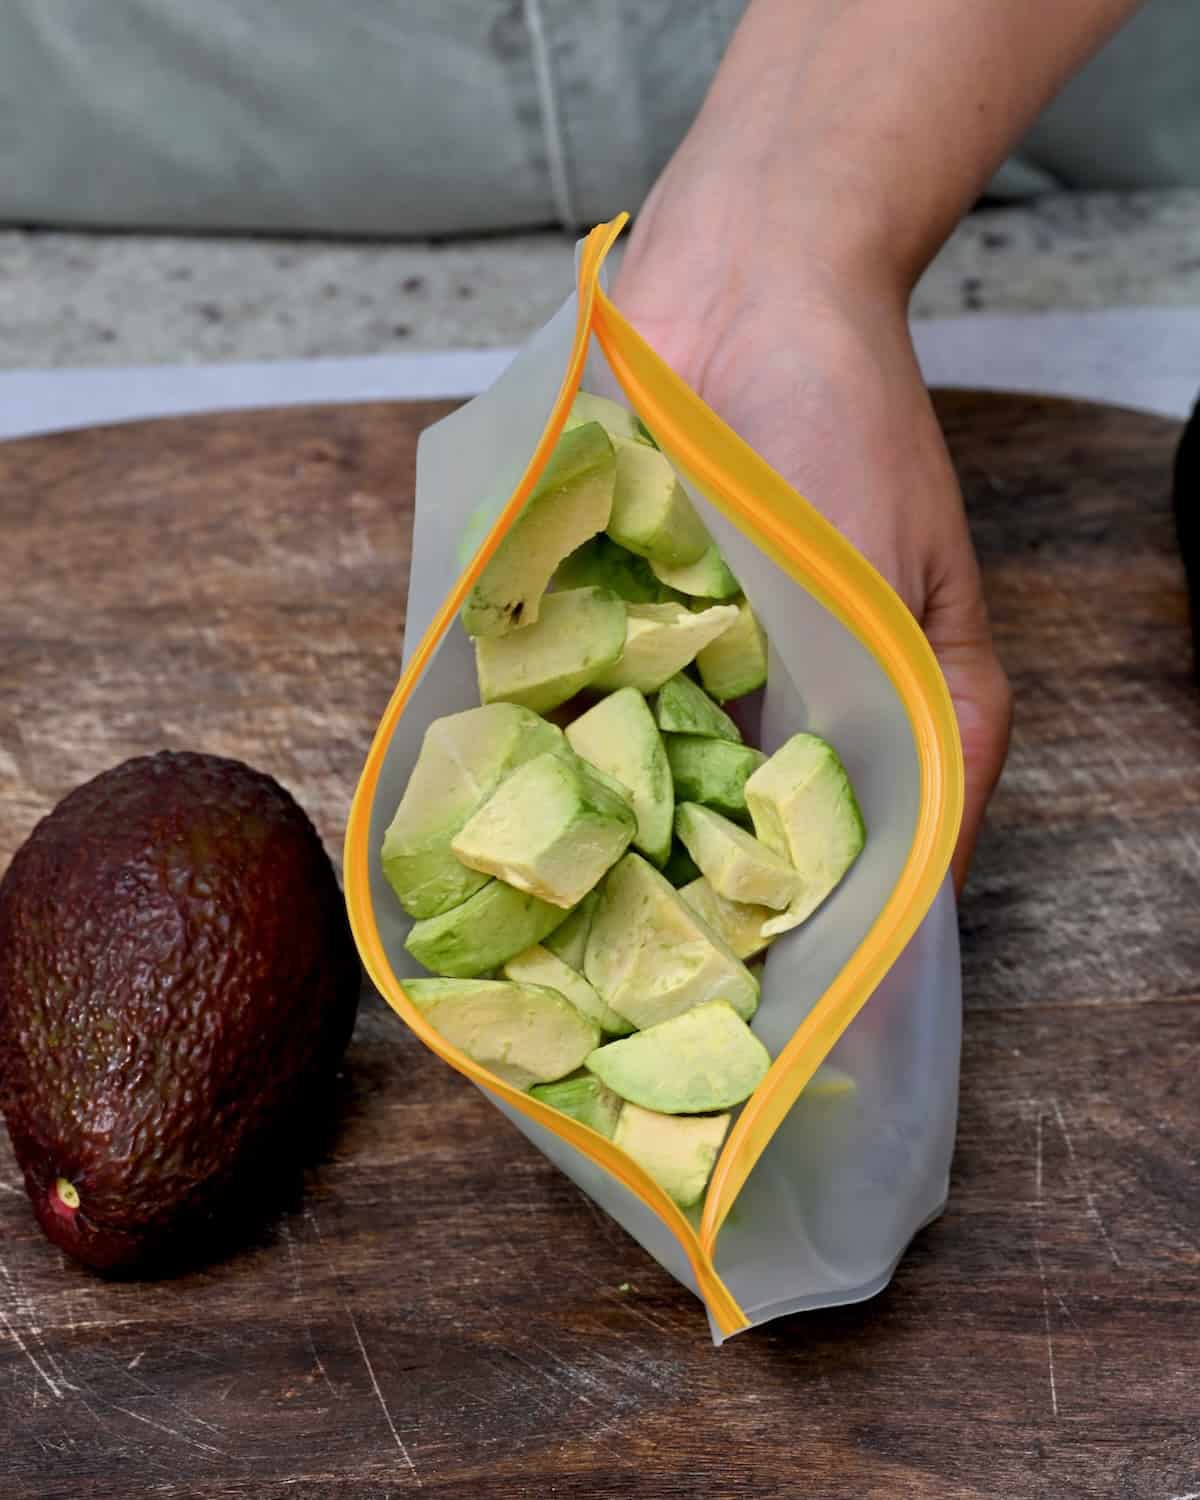 Frozen avocado chunks in a reusable freezer bag